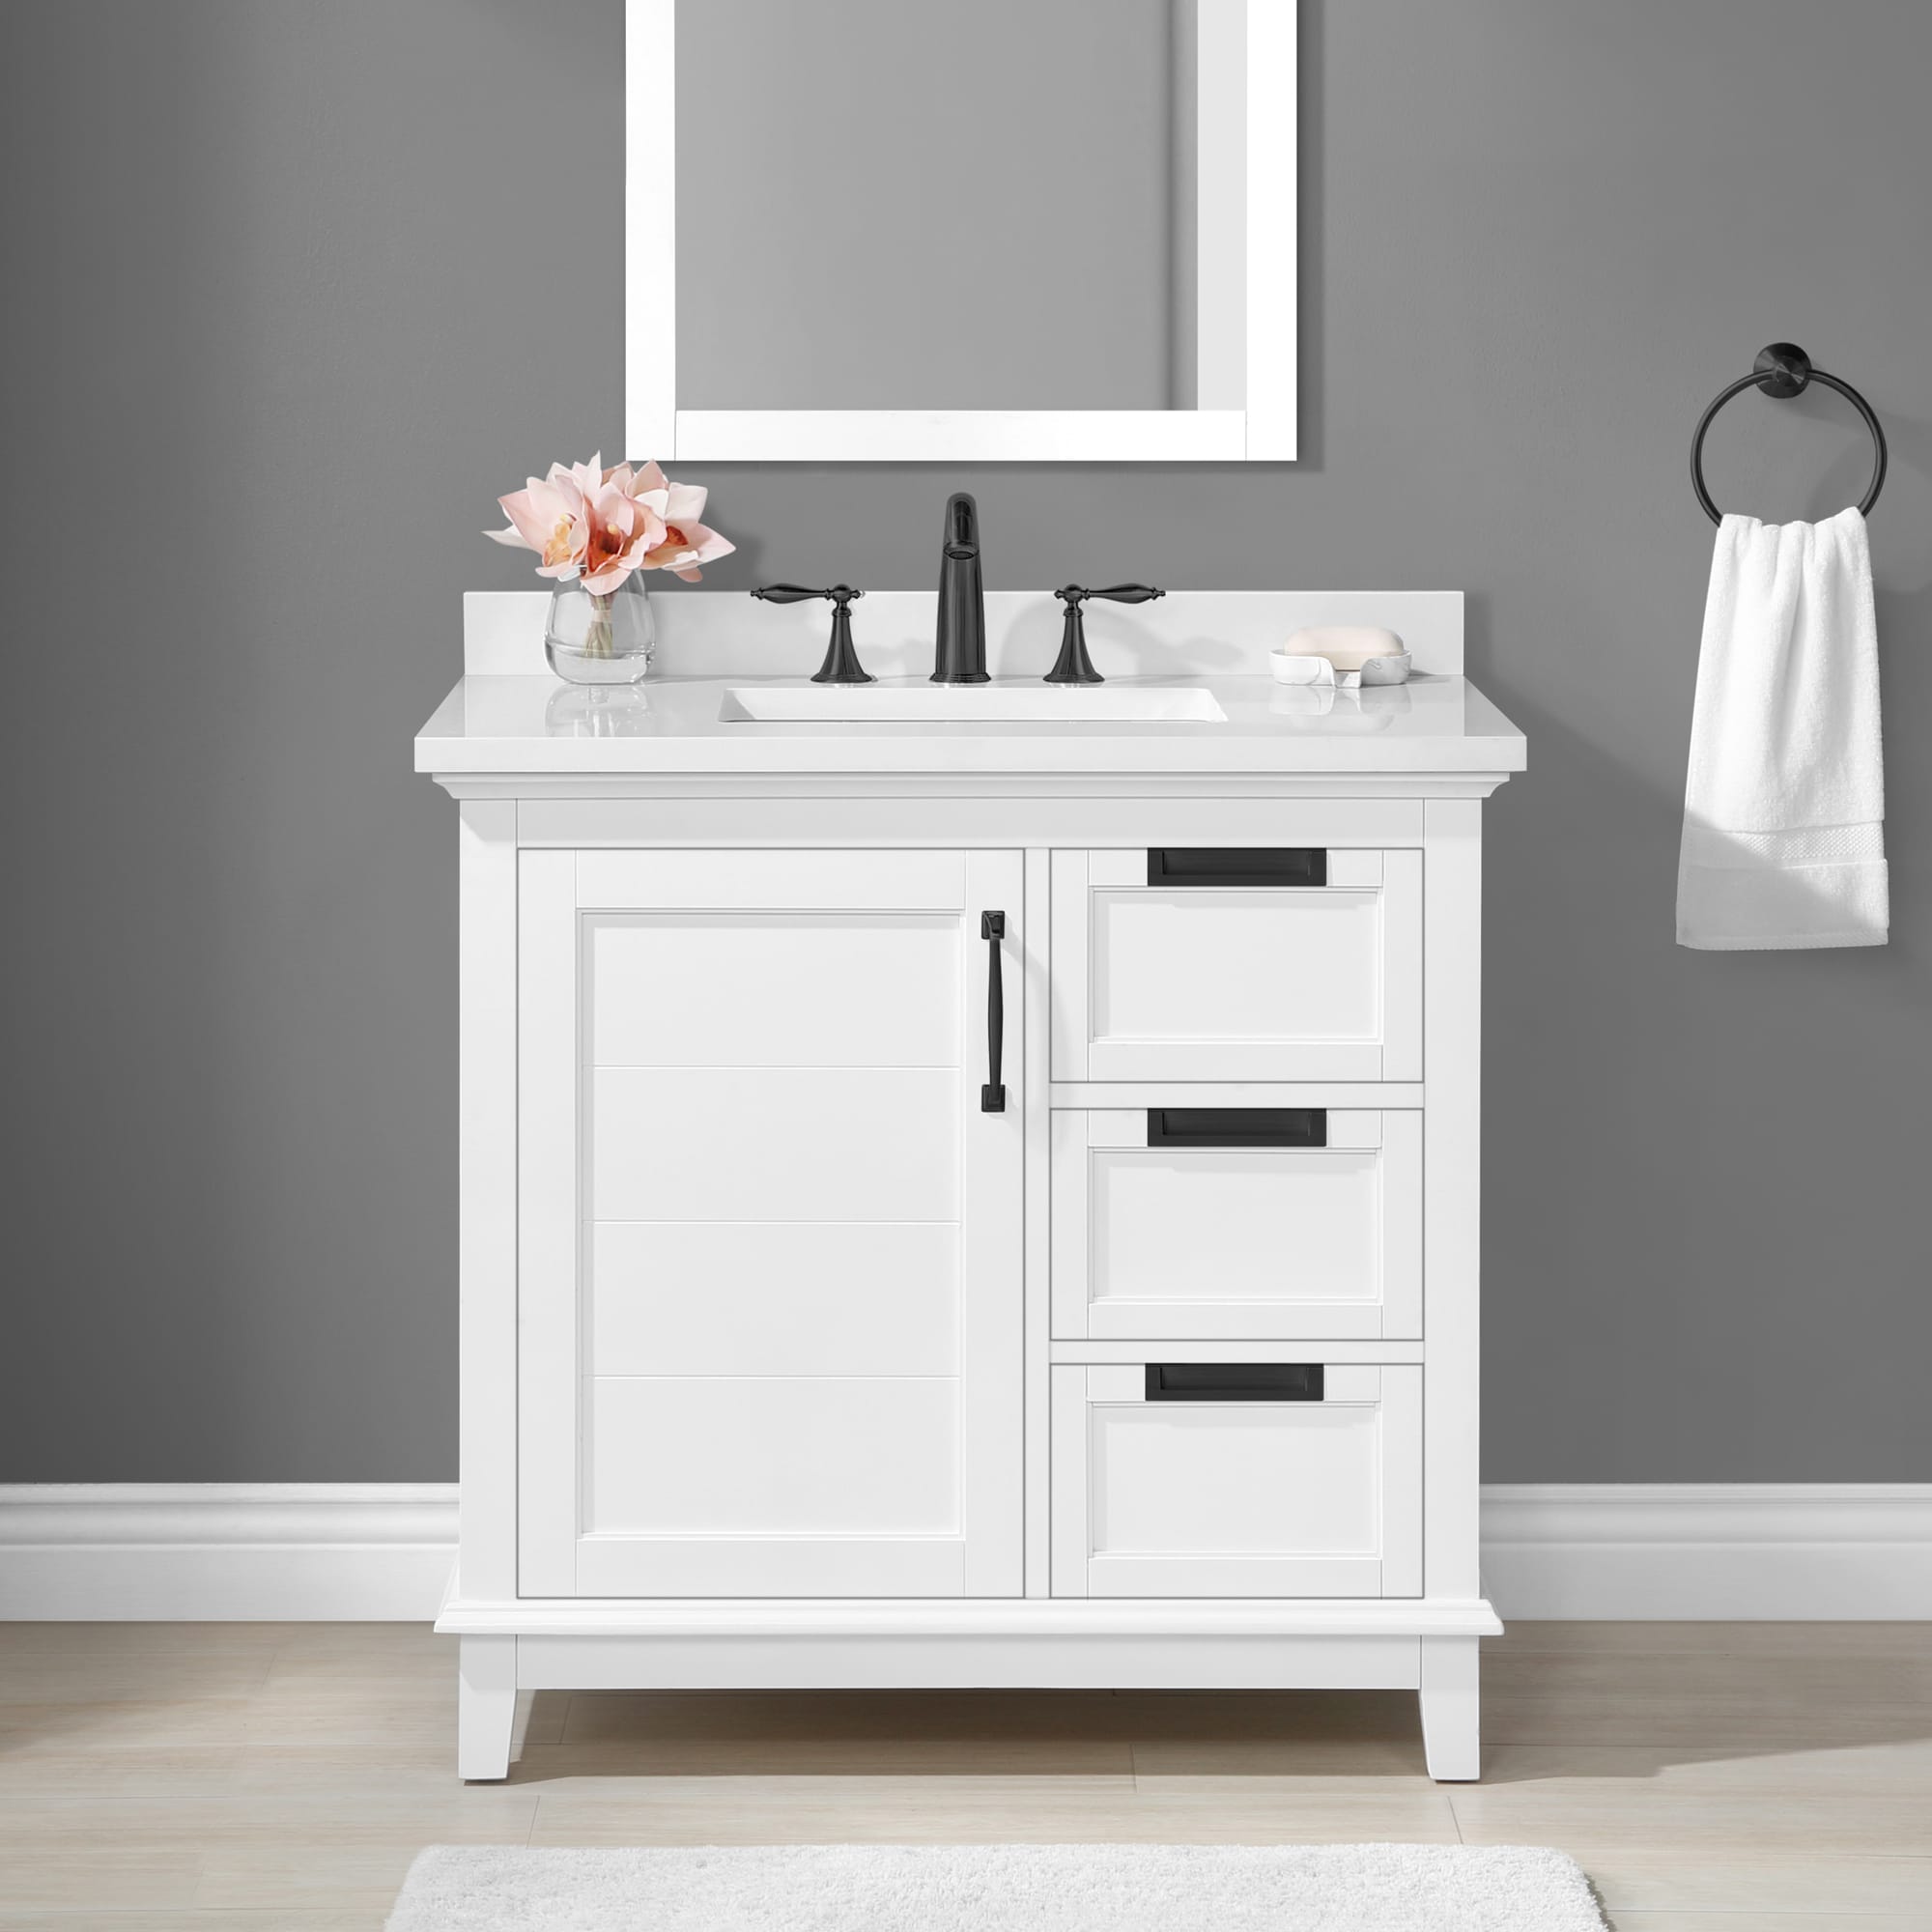 36 Inch Bathroom Sink Vanity – Rispa